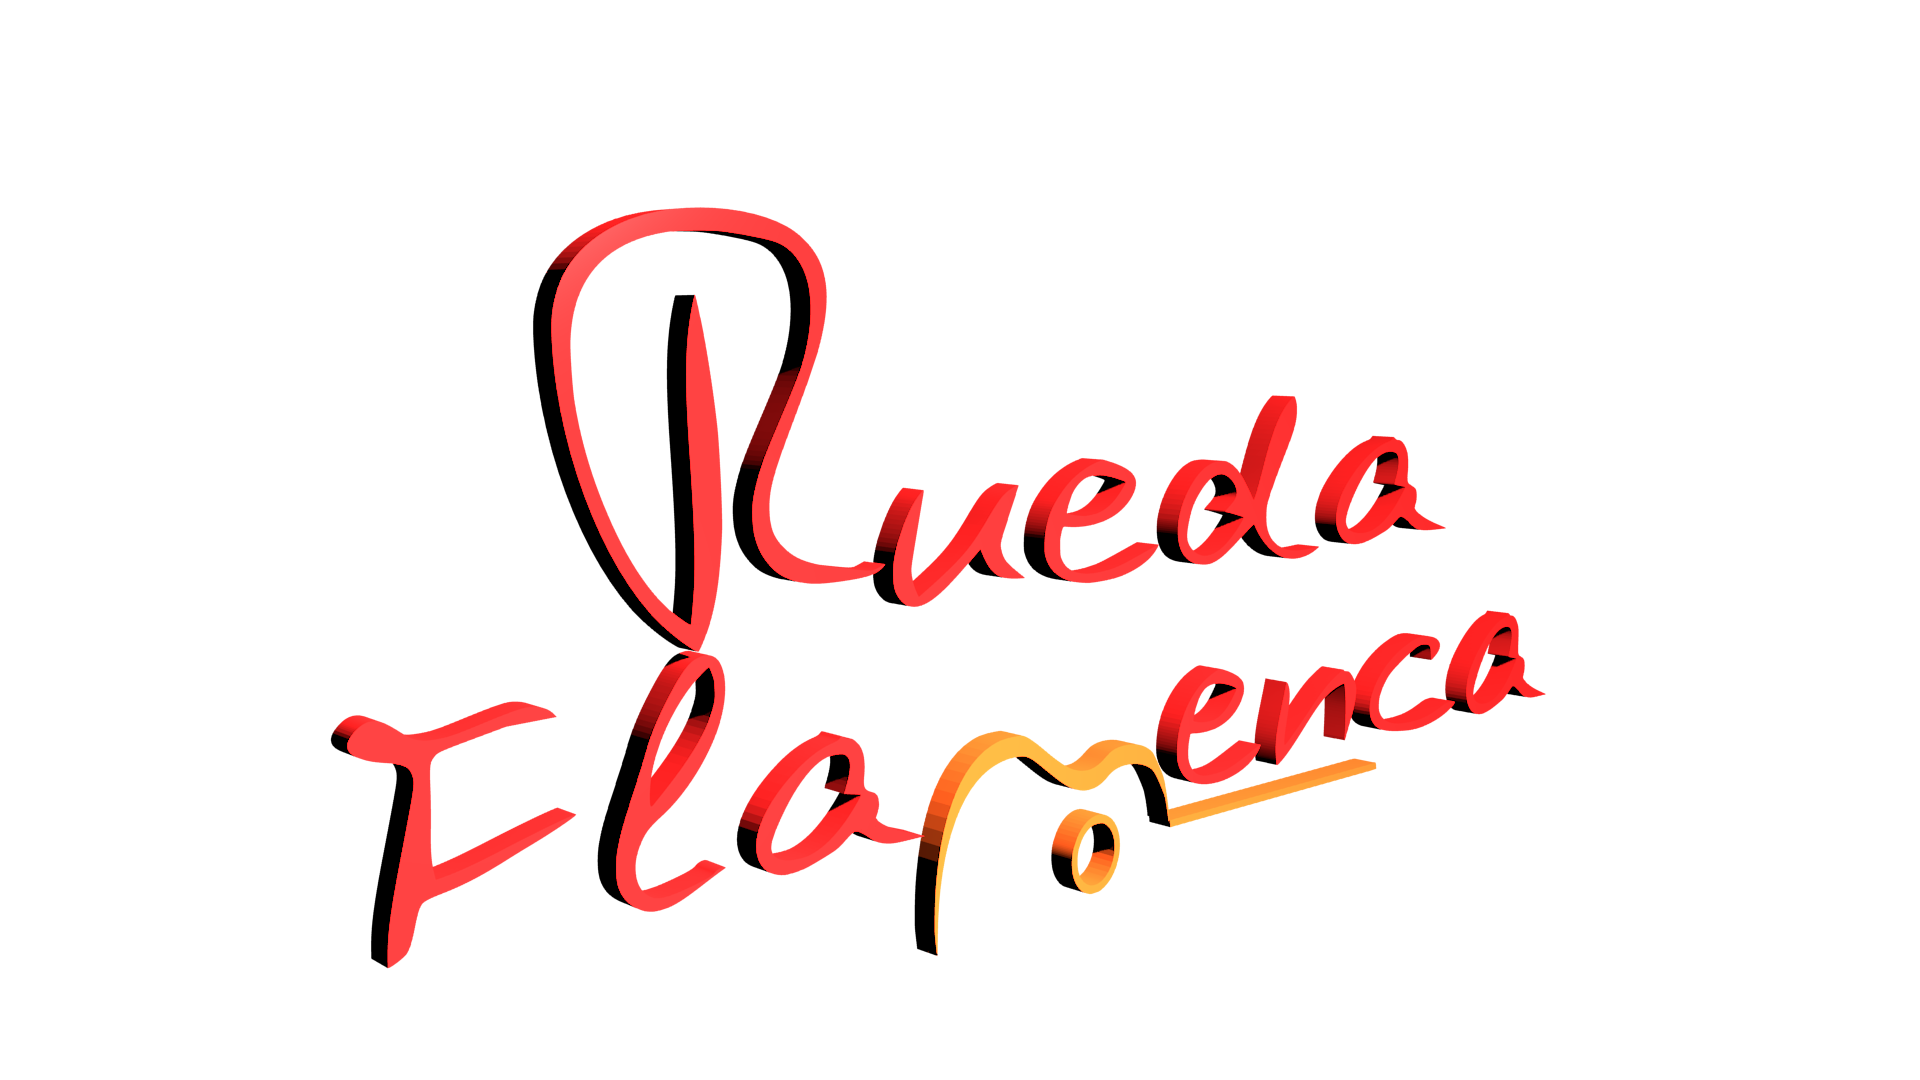 Rueda Flamenca